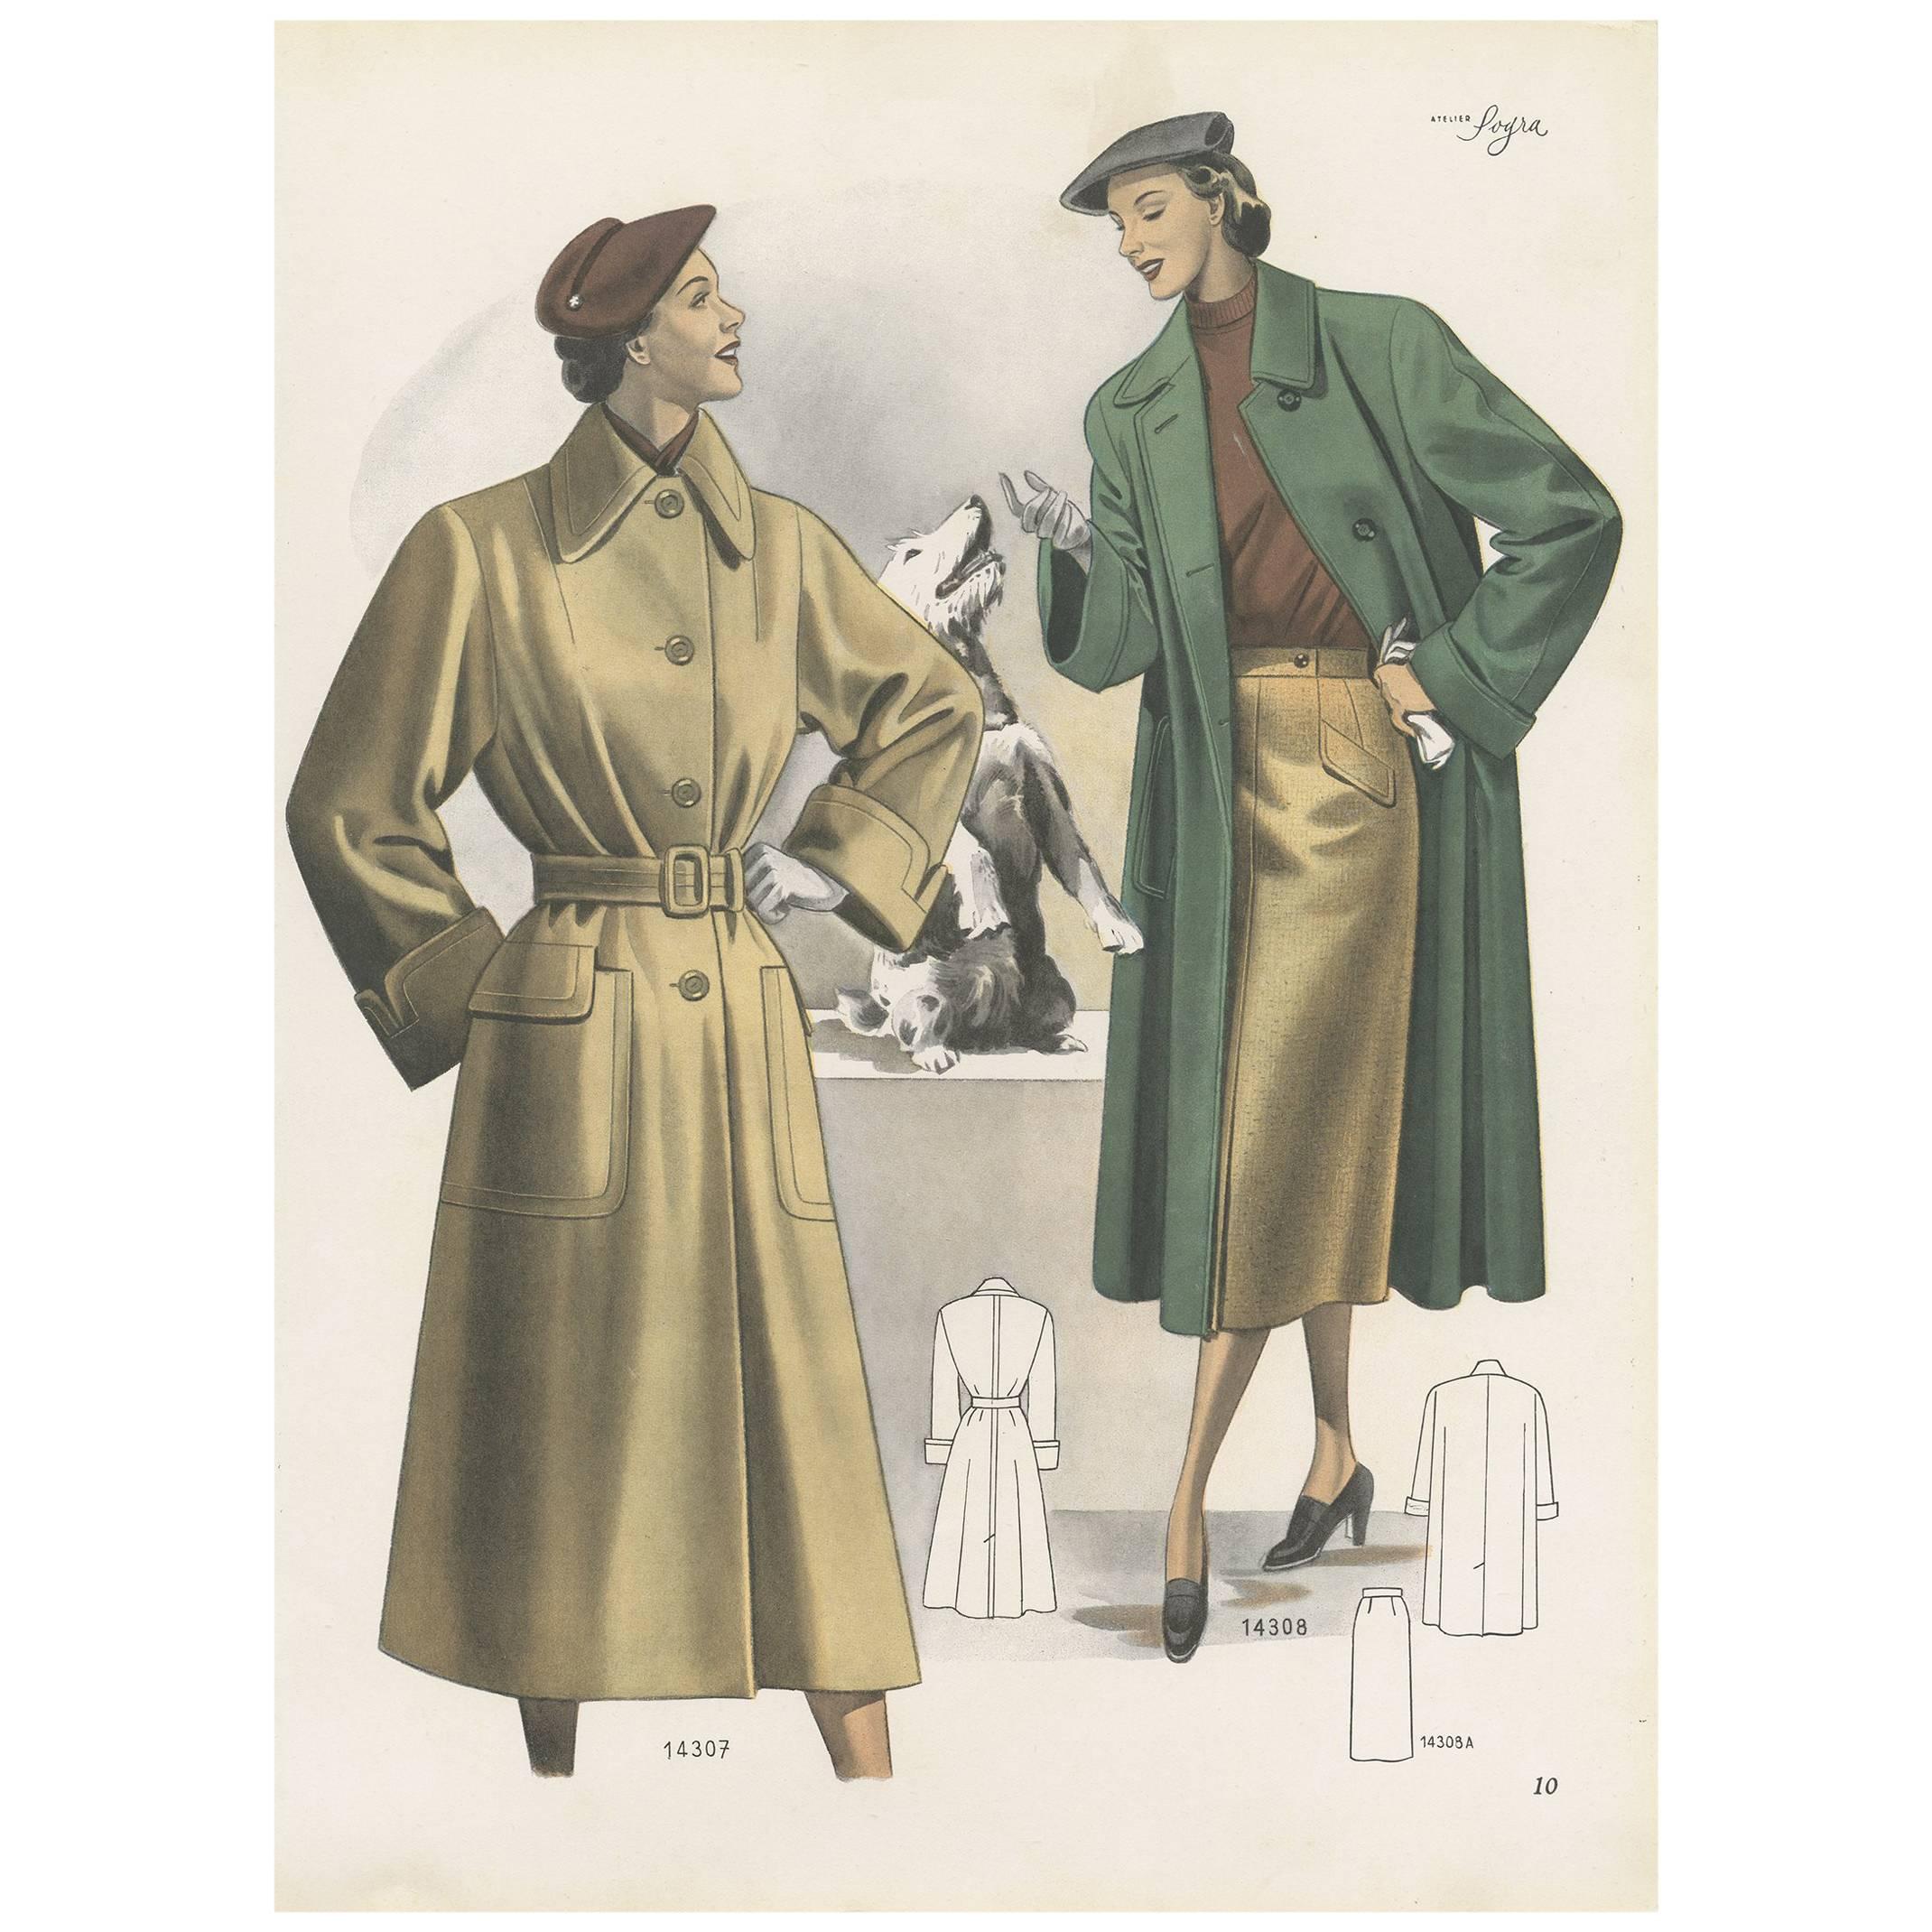 Impression de mode vintage (Pl. 14307) publiée dans Ladies Styles, 1952